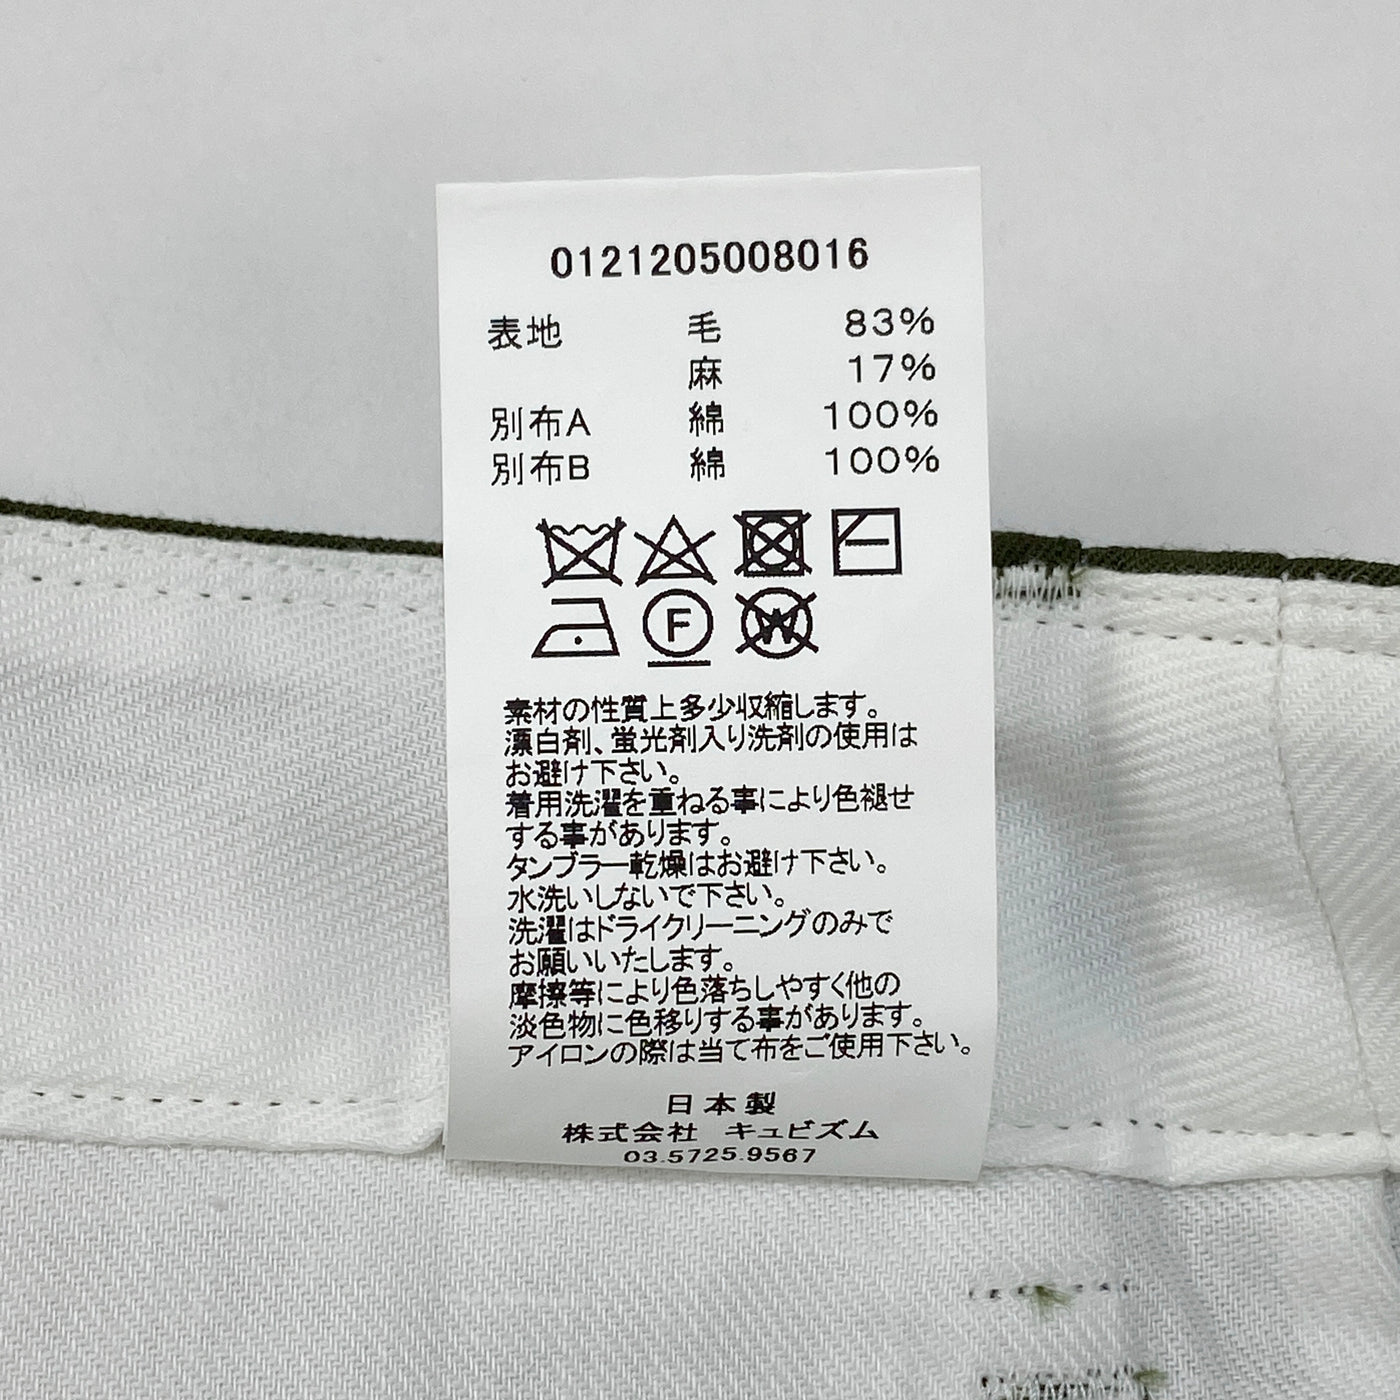 【新品】2021AW CHINO PANTS HW TAPER (W/L) 0121205008016 3 OLIVE